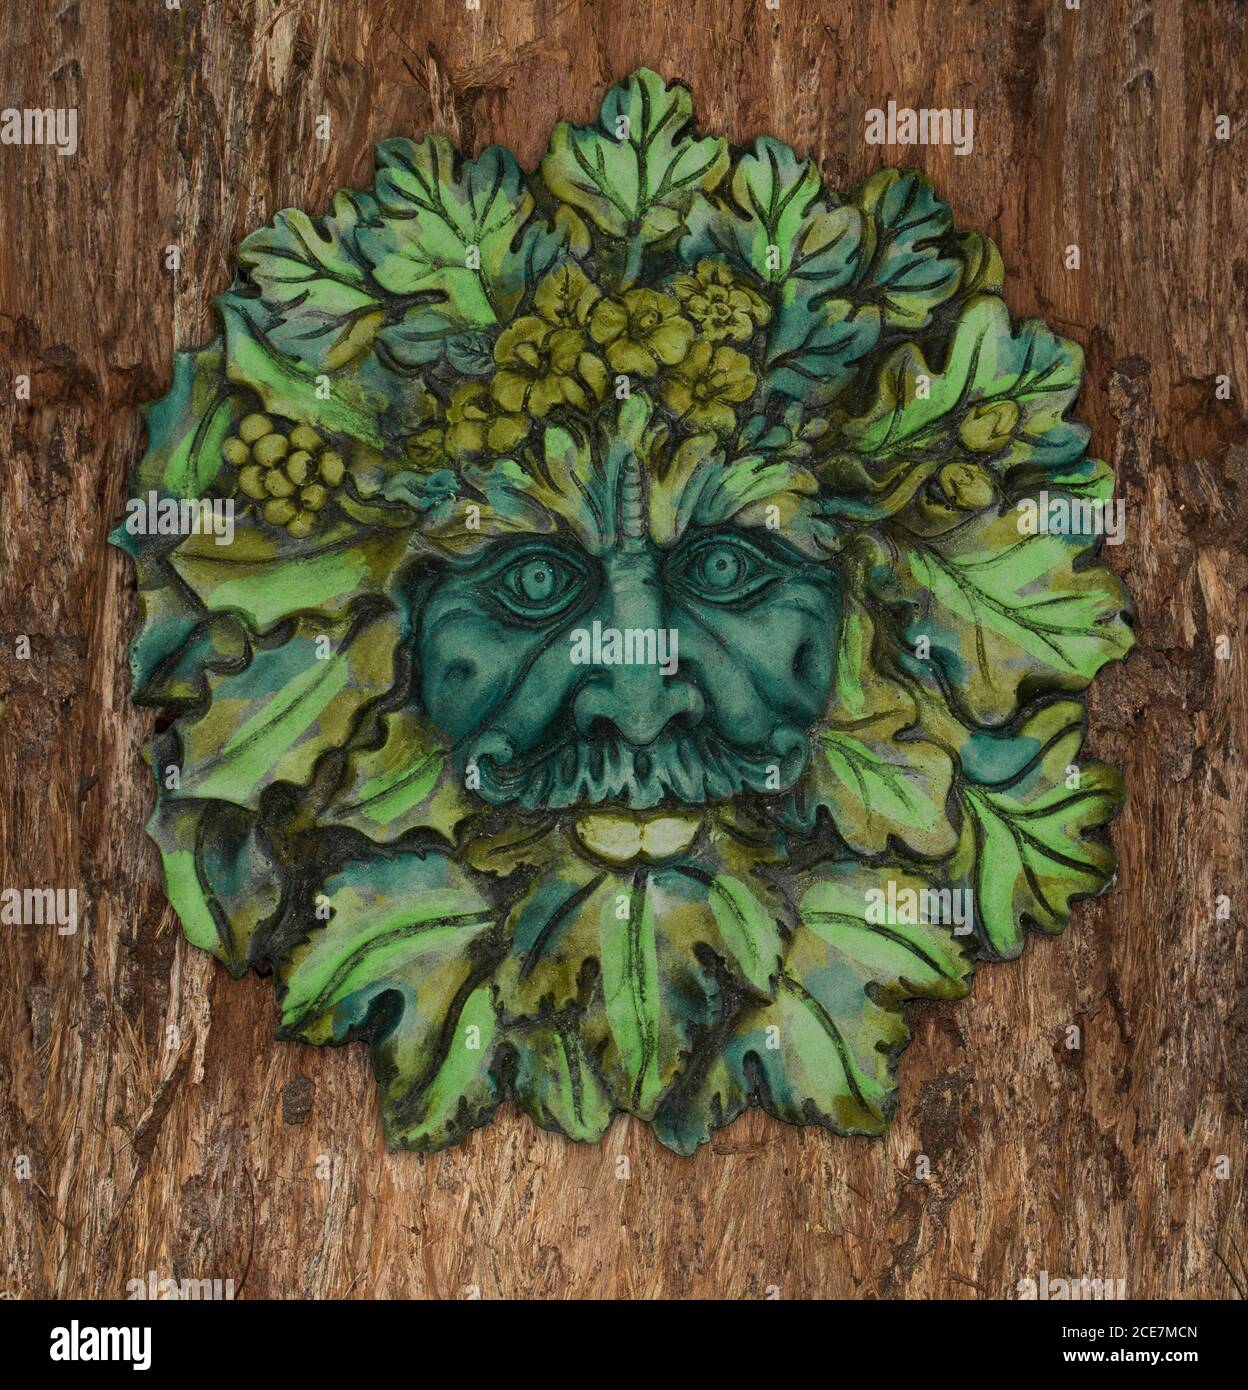 Art de jardin en béton très décoratif, face de feuilles de Green Man, esprit mythique britannique des forêts, sur fond d'écorce d'arbre brun Banque D'Images